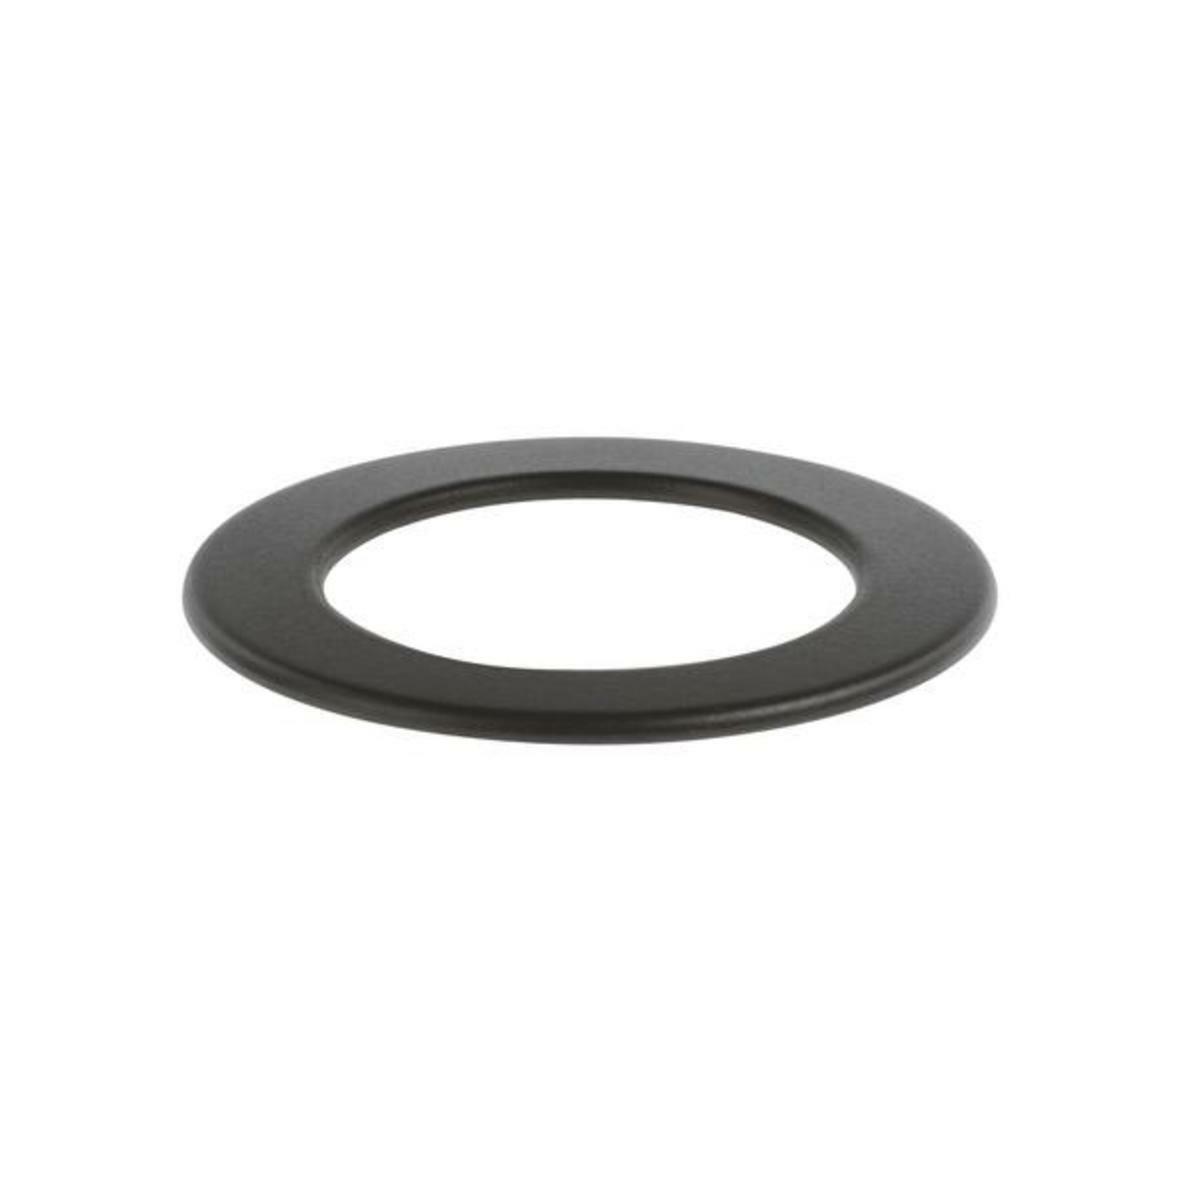 Brennerdeckel wok-aussen d=130mm rauh0 (KD-00189613) von BSH (Bosch-Siemens-Hausgeräte)